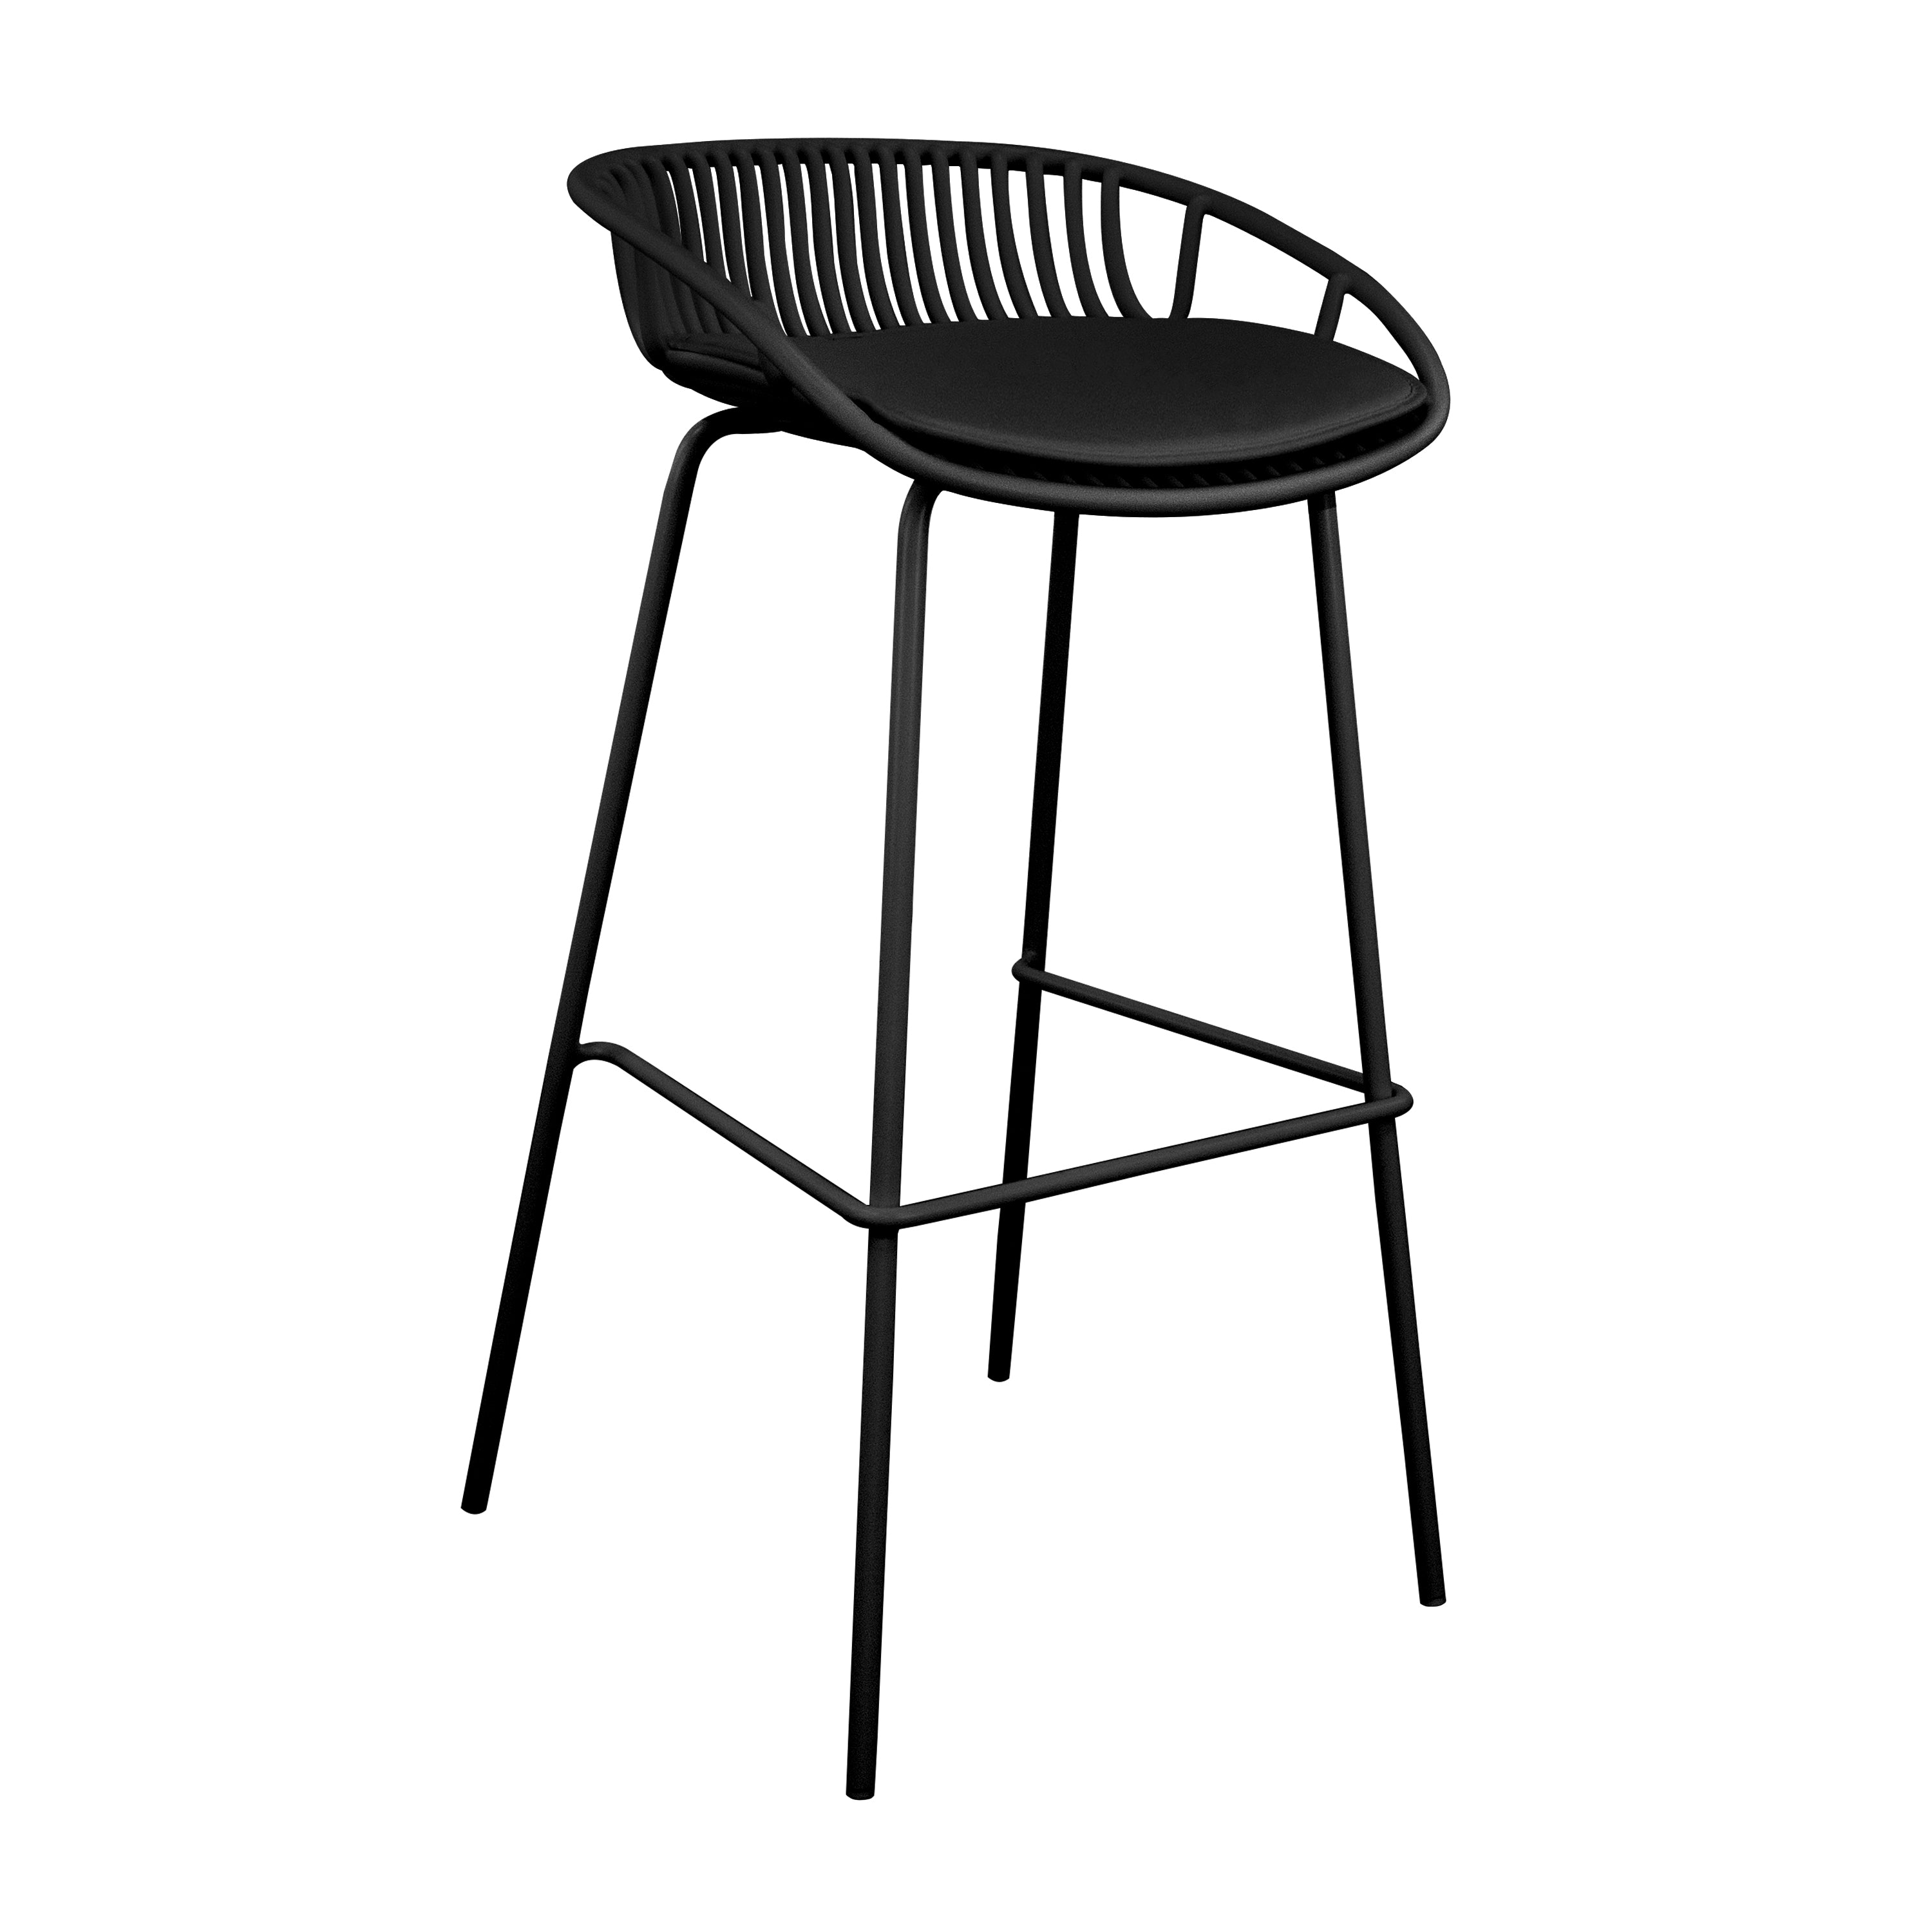 Kick (garden) bar stool Rio